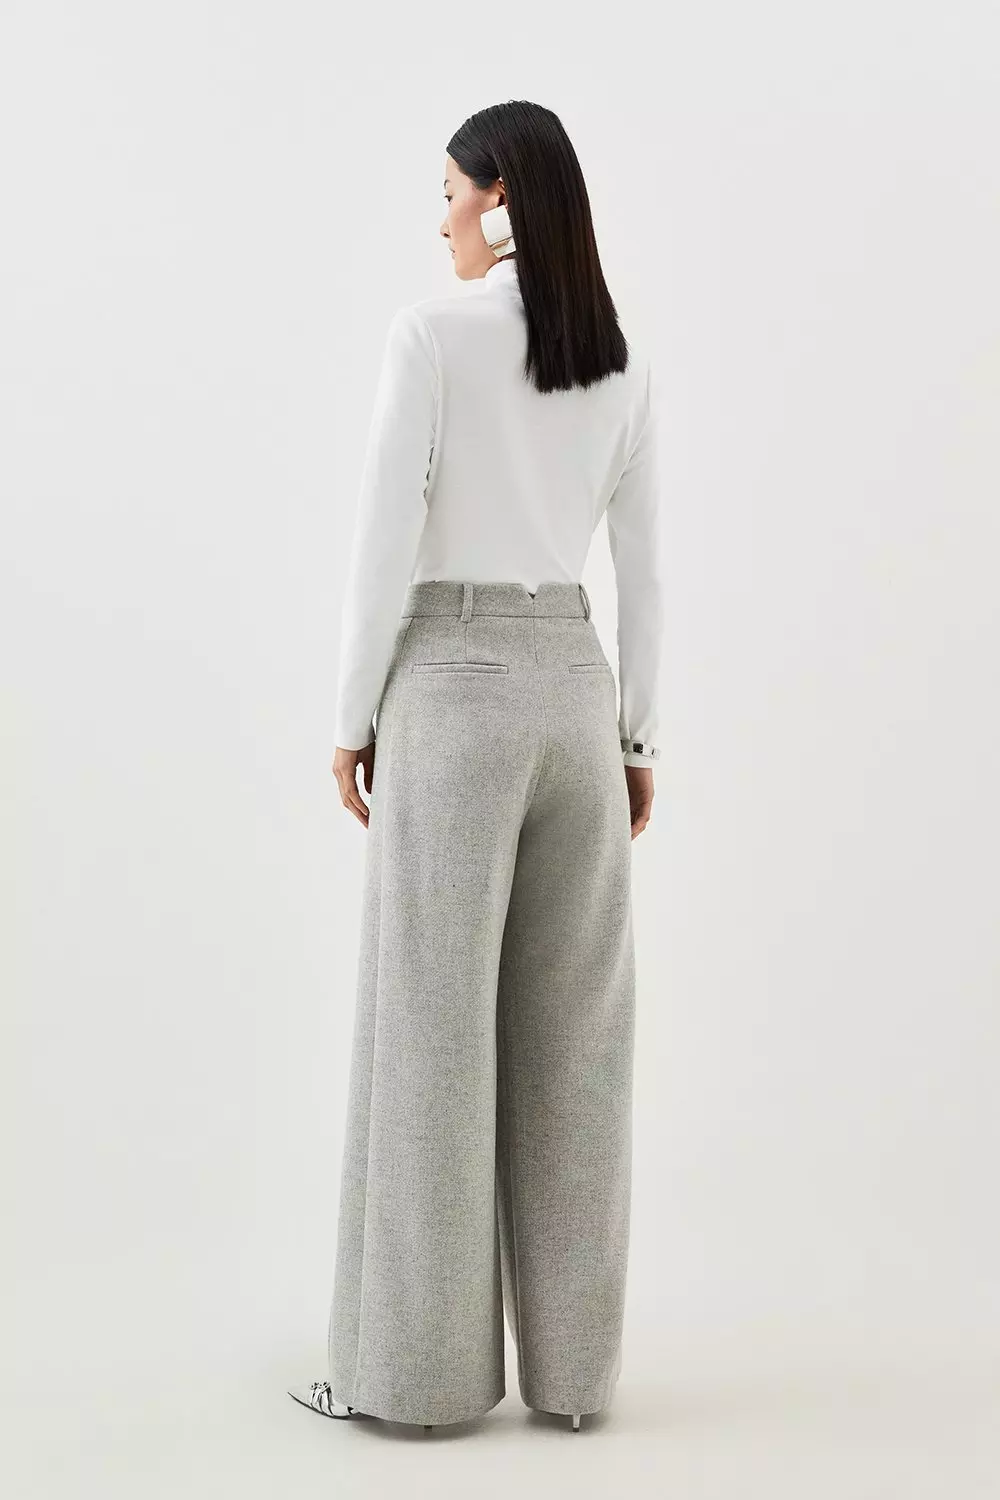 Petite Tailored Wool Blend Double Faced Wide Leg Pants | Karen Millen